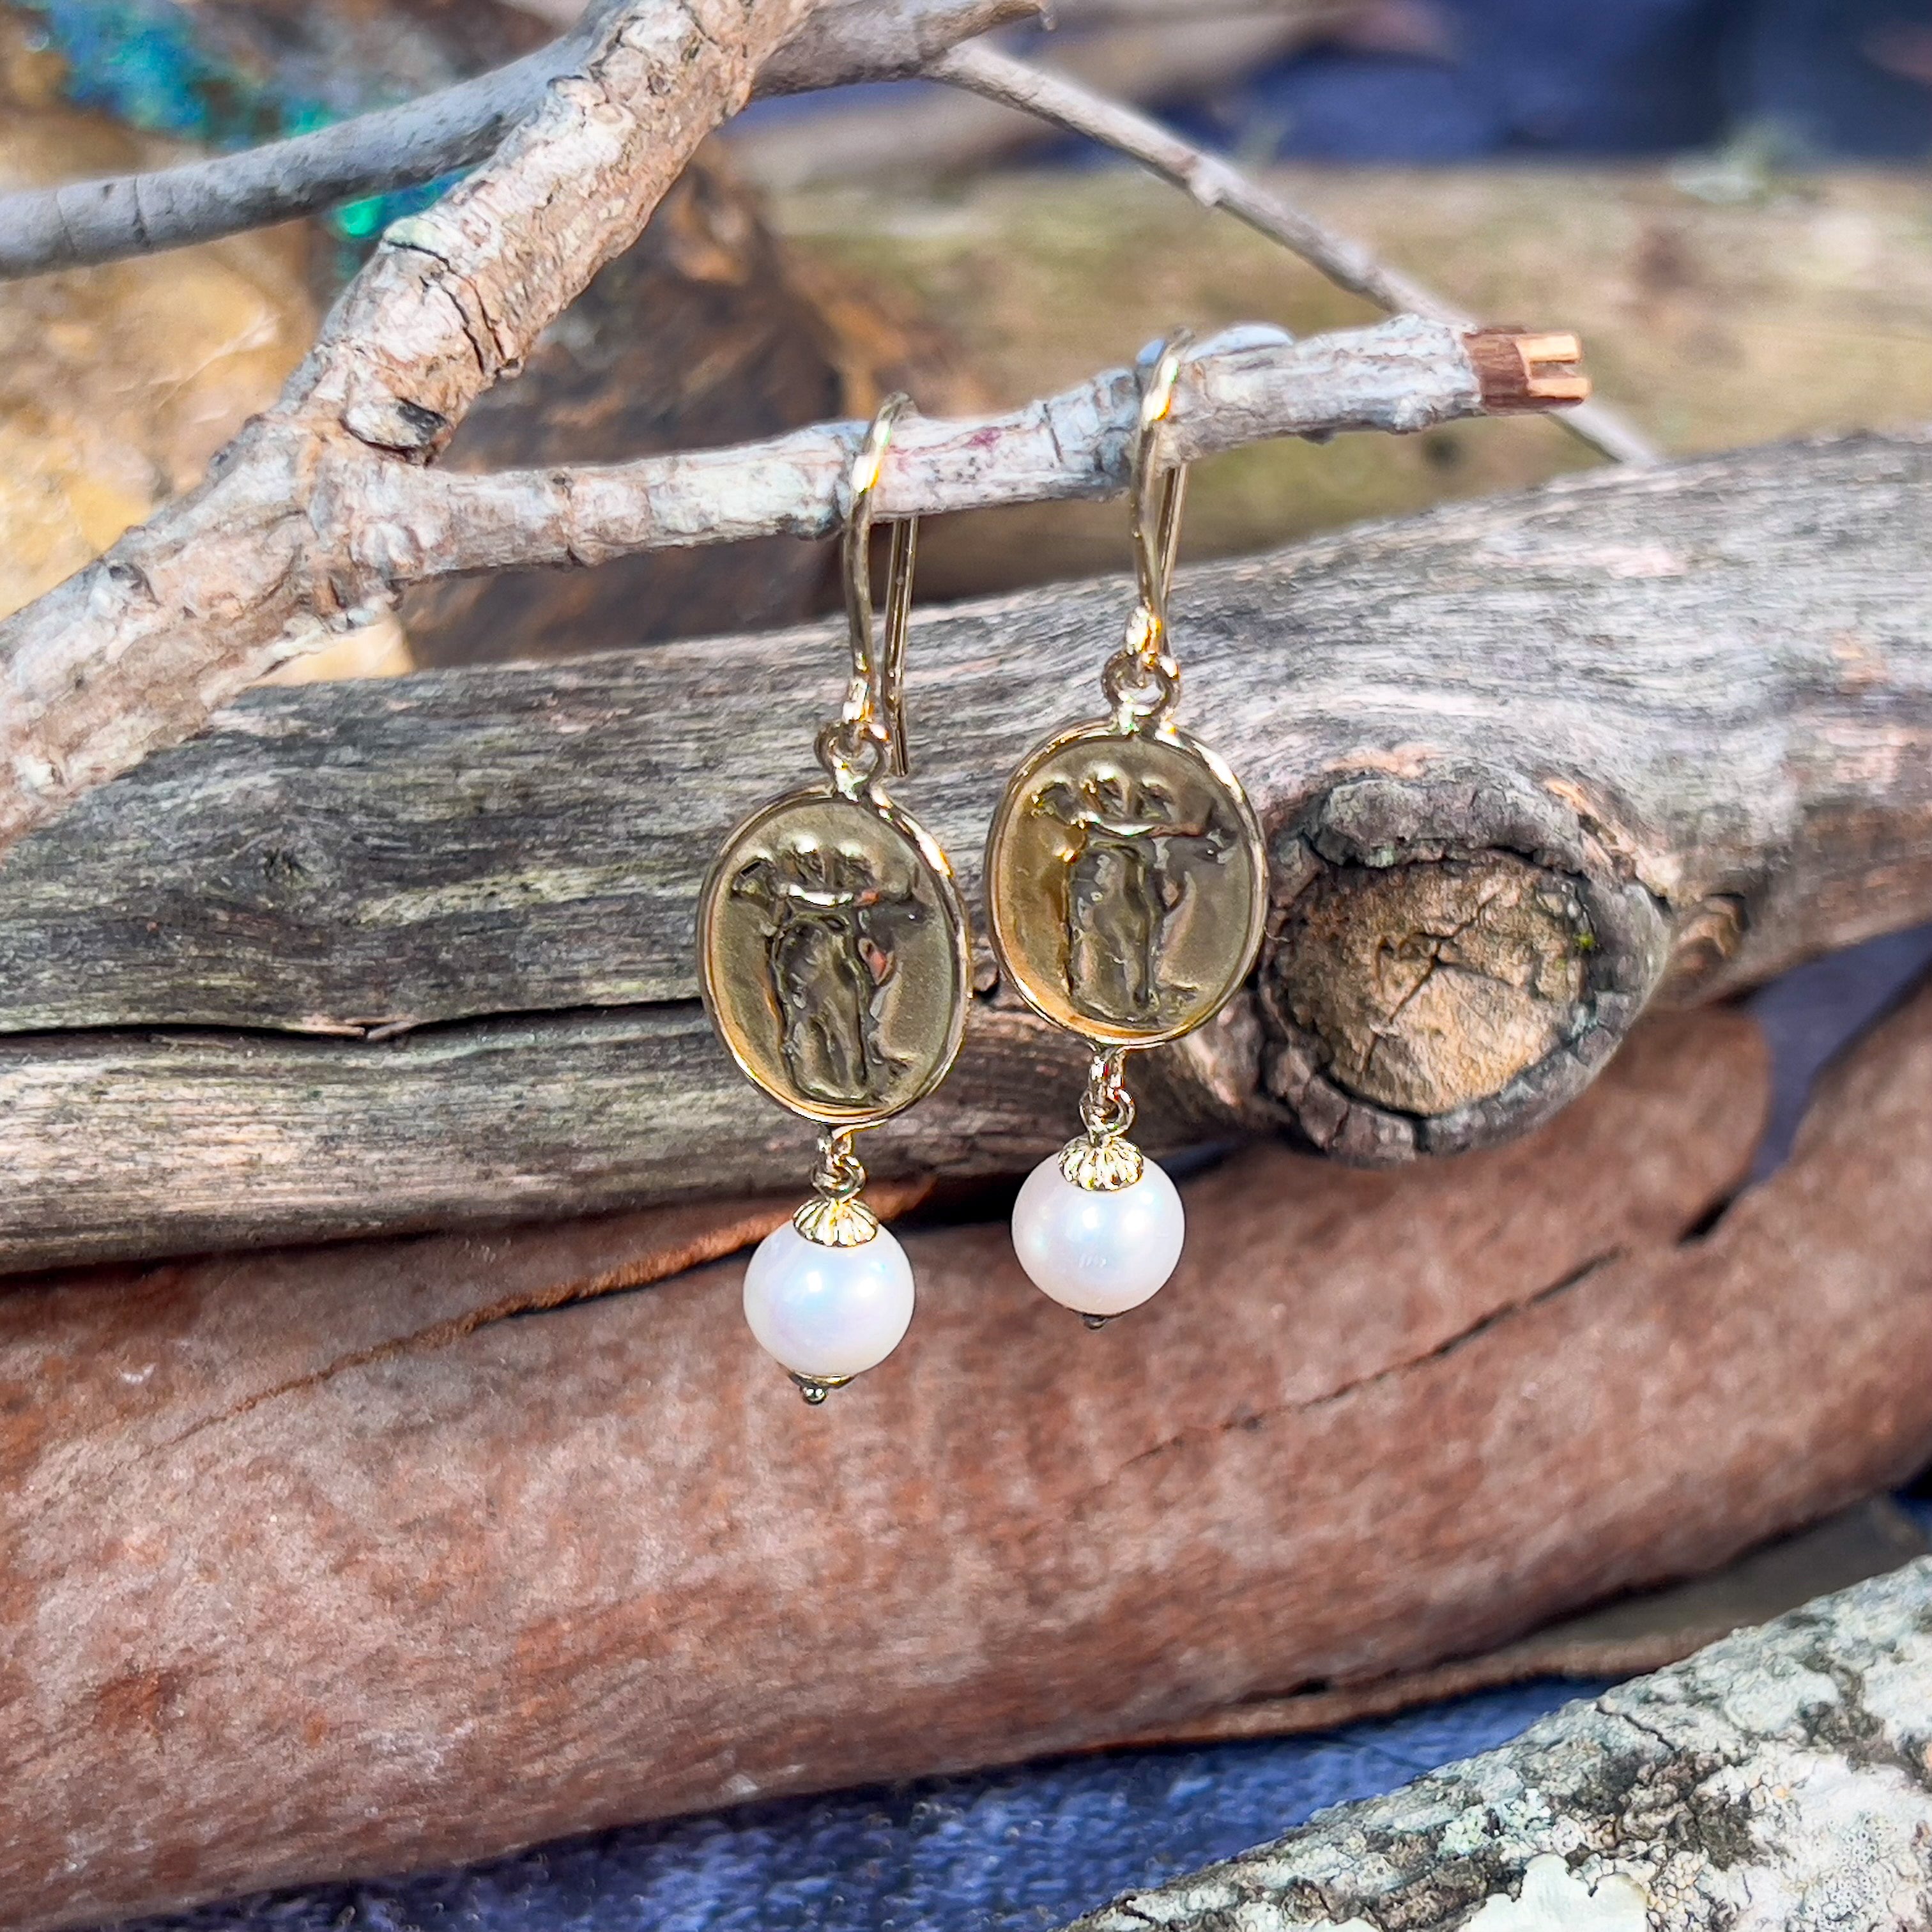 14kt Yellow Gold dangling vintage design Pearl earrings - Masterpiece Jewellery Opal & Gems Sydney Australia | Online Shop